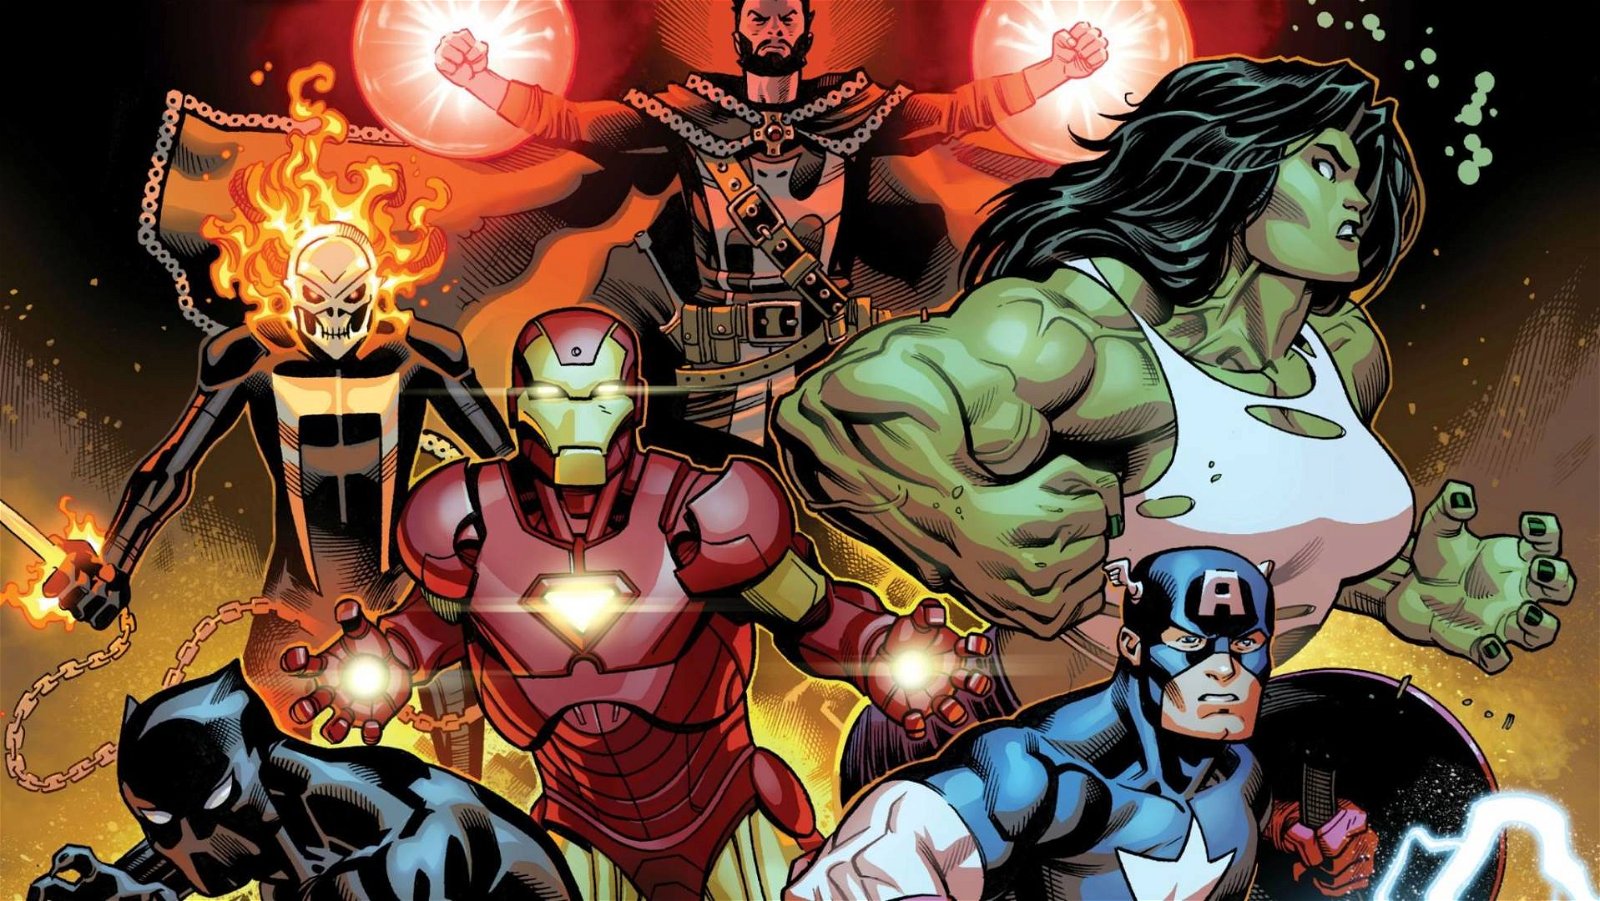 Immagine di Su Avengers #50 debuttano i Multiversal Masters of Evil